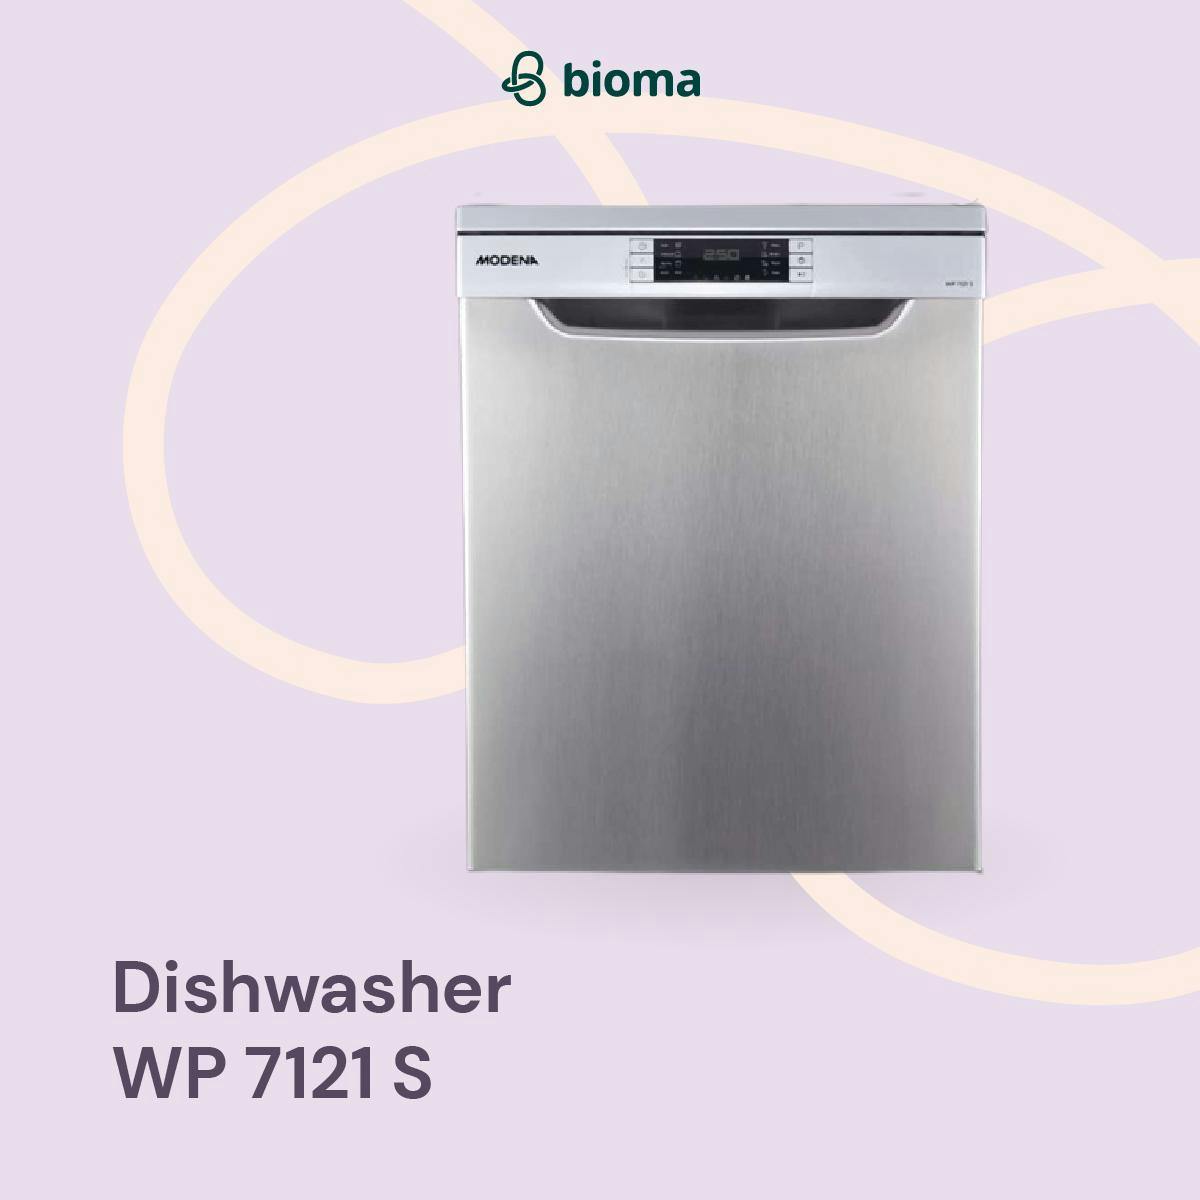 Image 310 Dishwasher WP 7121 S